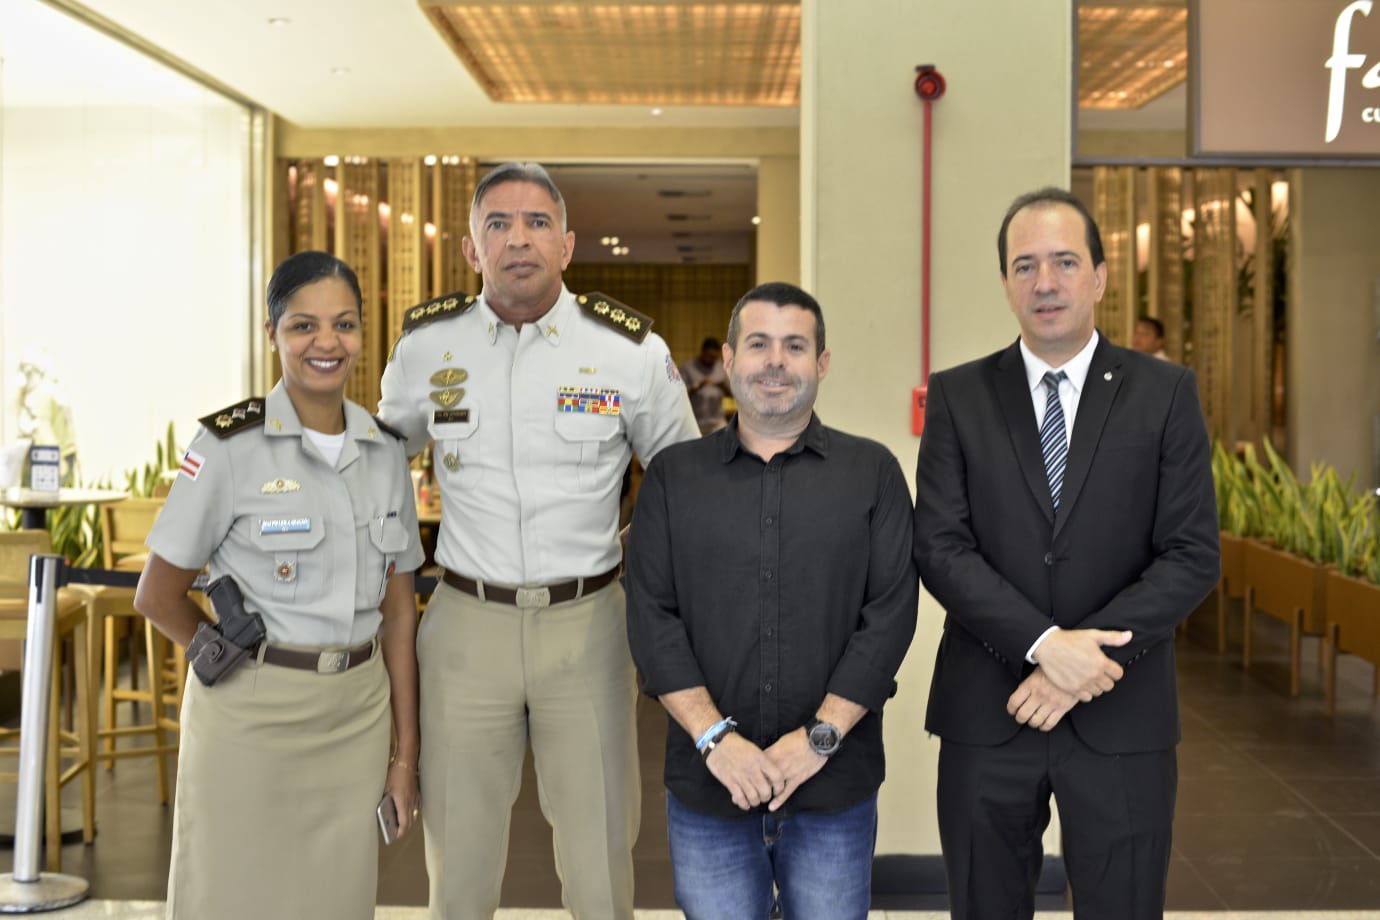    Major Leila, Coronel Sturaro, Wilton Oliveira e Geovane Iran  